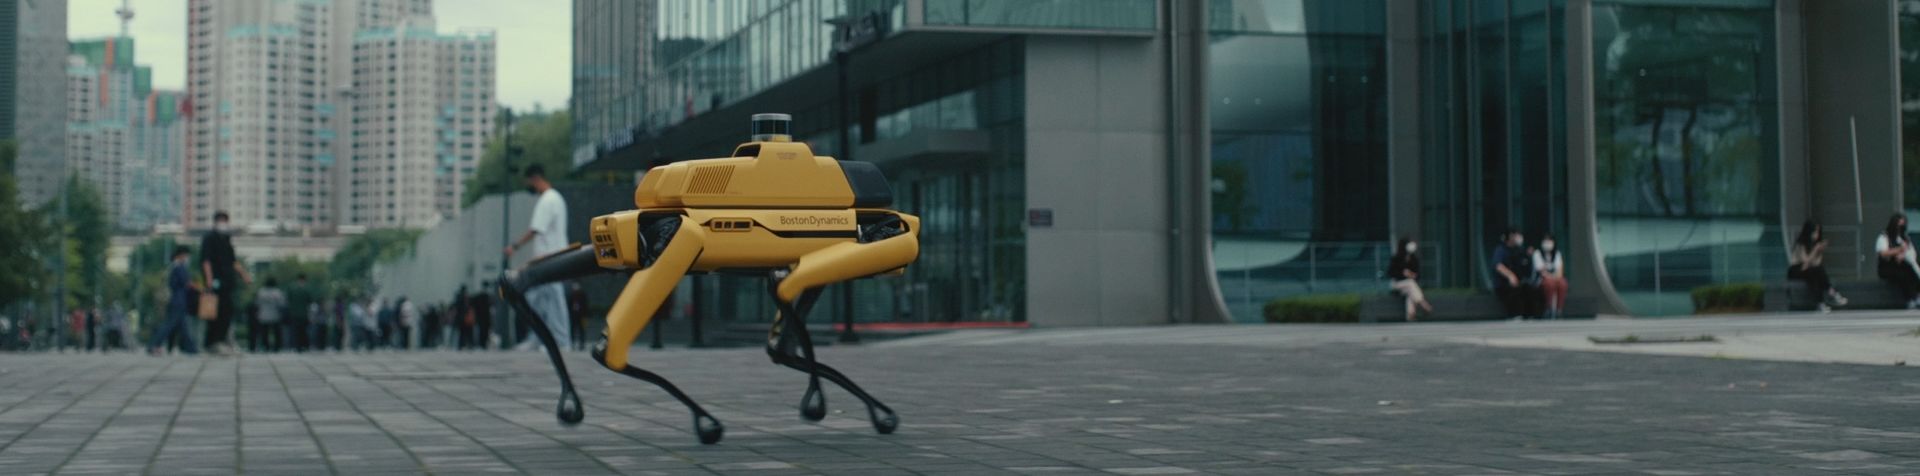 서울 도심을 걷고 있는 스팟의 모습입니다. 다리가 4개인 밝은 노란색 로봇 스팟의 측면에는 ‘보스턴 다이내믹스(Boston Dynamics)’가 쓰여 있습니다.